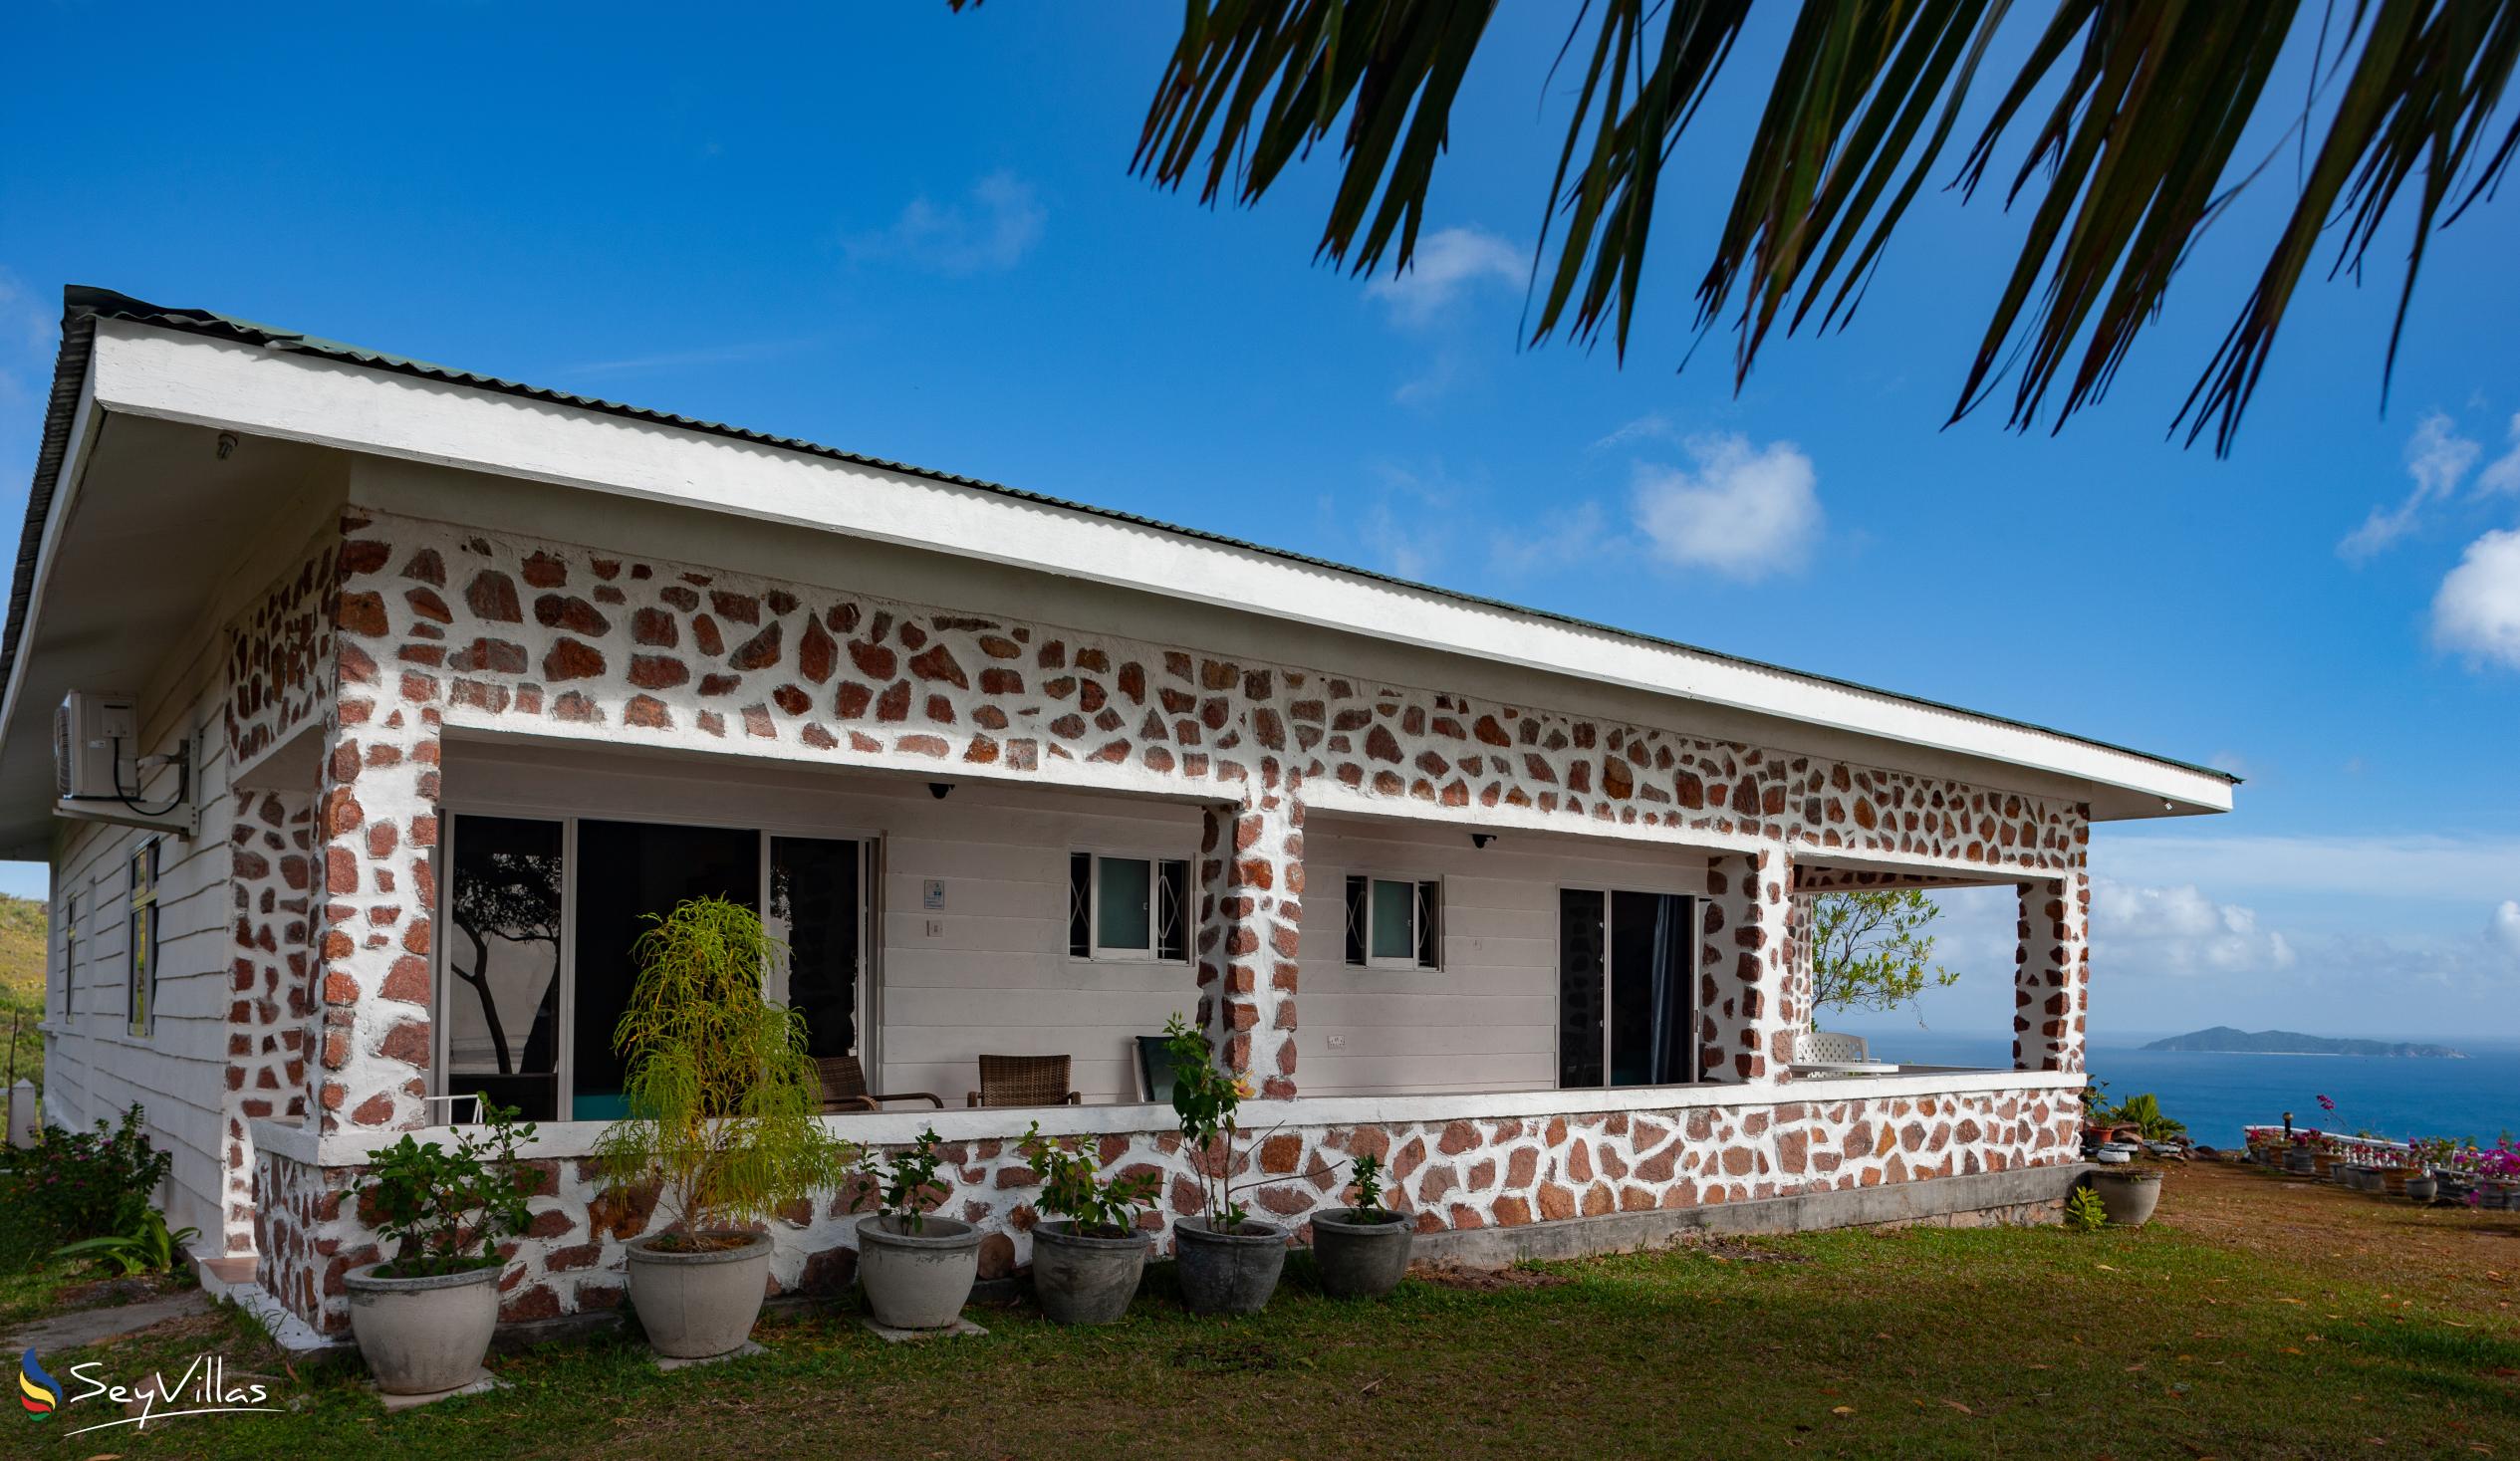 Foto 15: Maison du Soleil - Aussenbereich - Praslin (Seychellen)